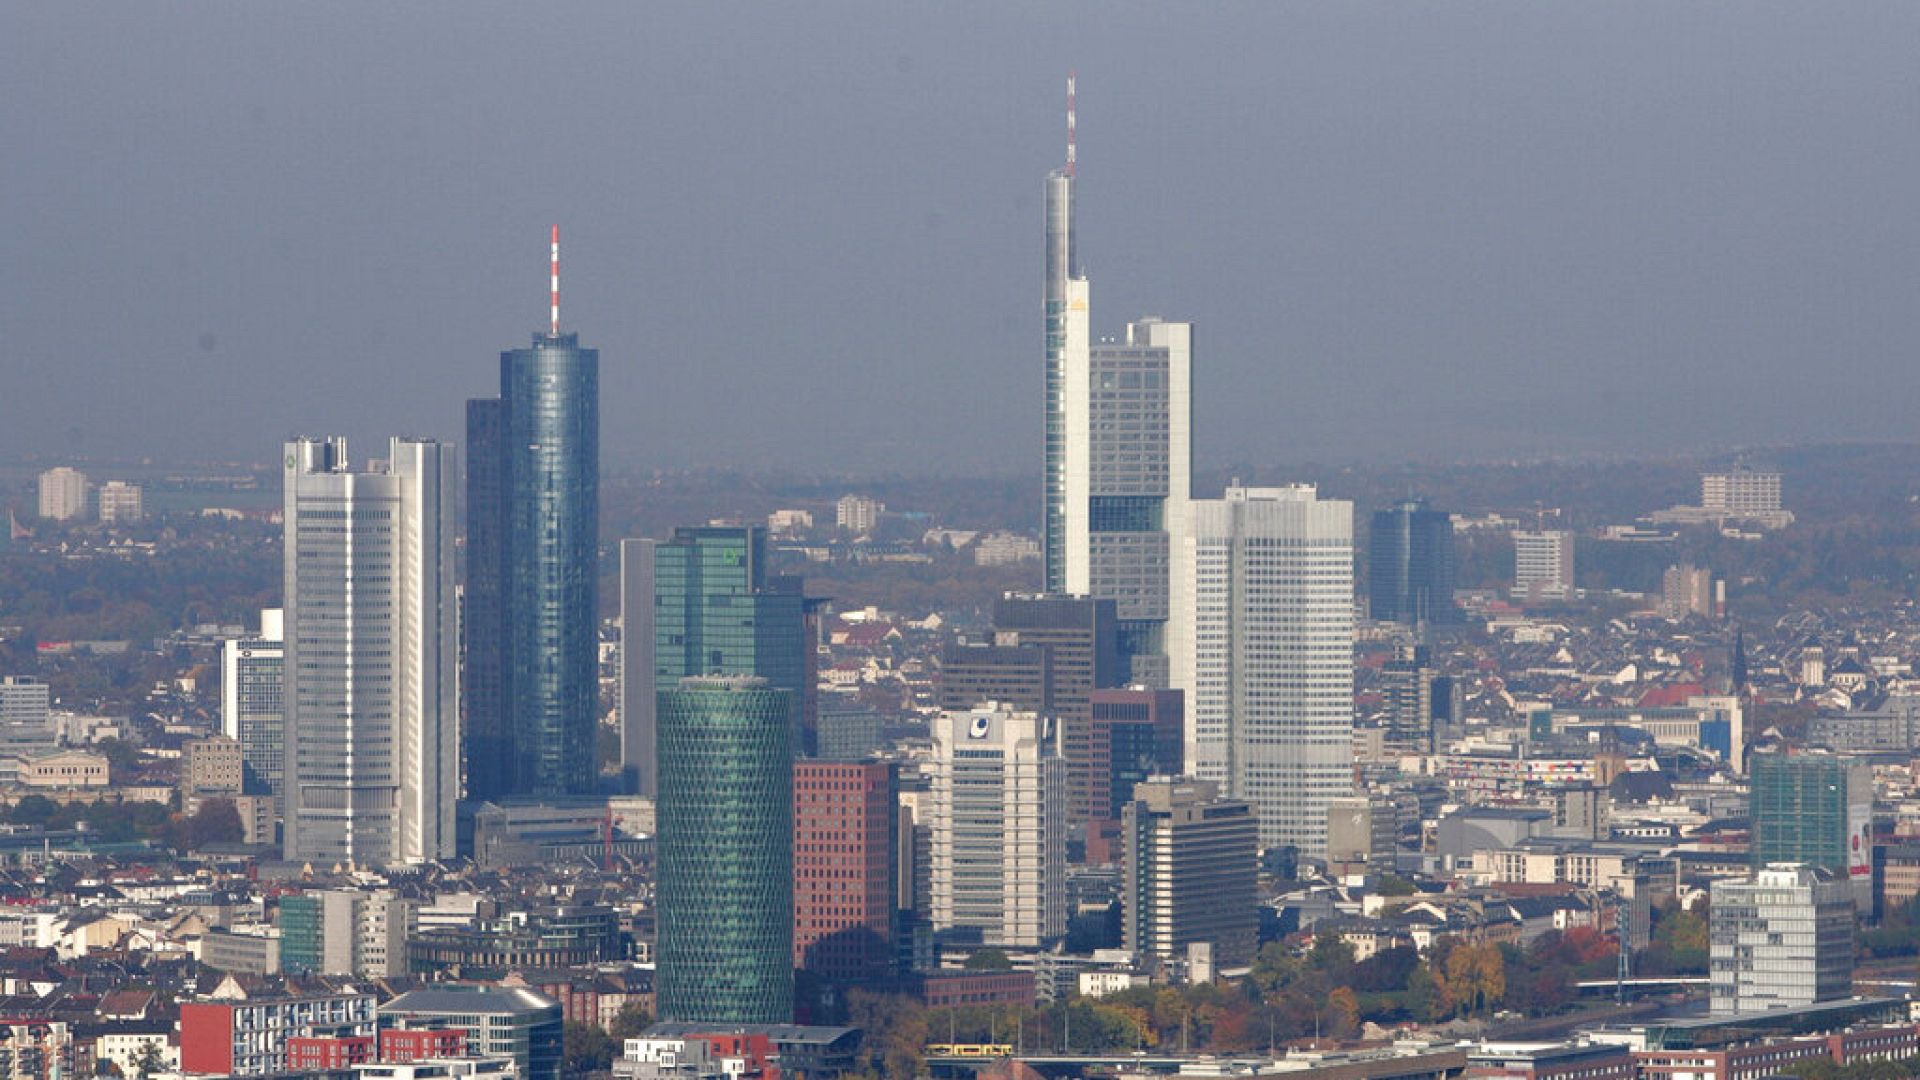 AB'nin yeni kara parayla mücadele kurumu AMLA'nın merkezi Frankfurt olacak